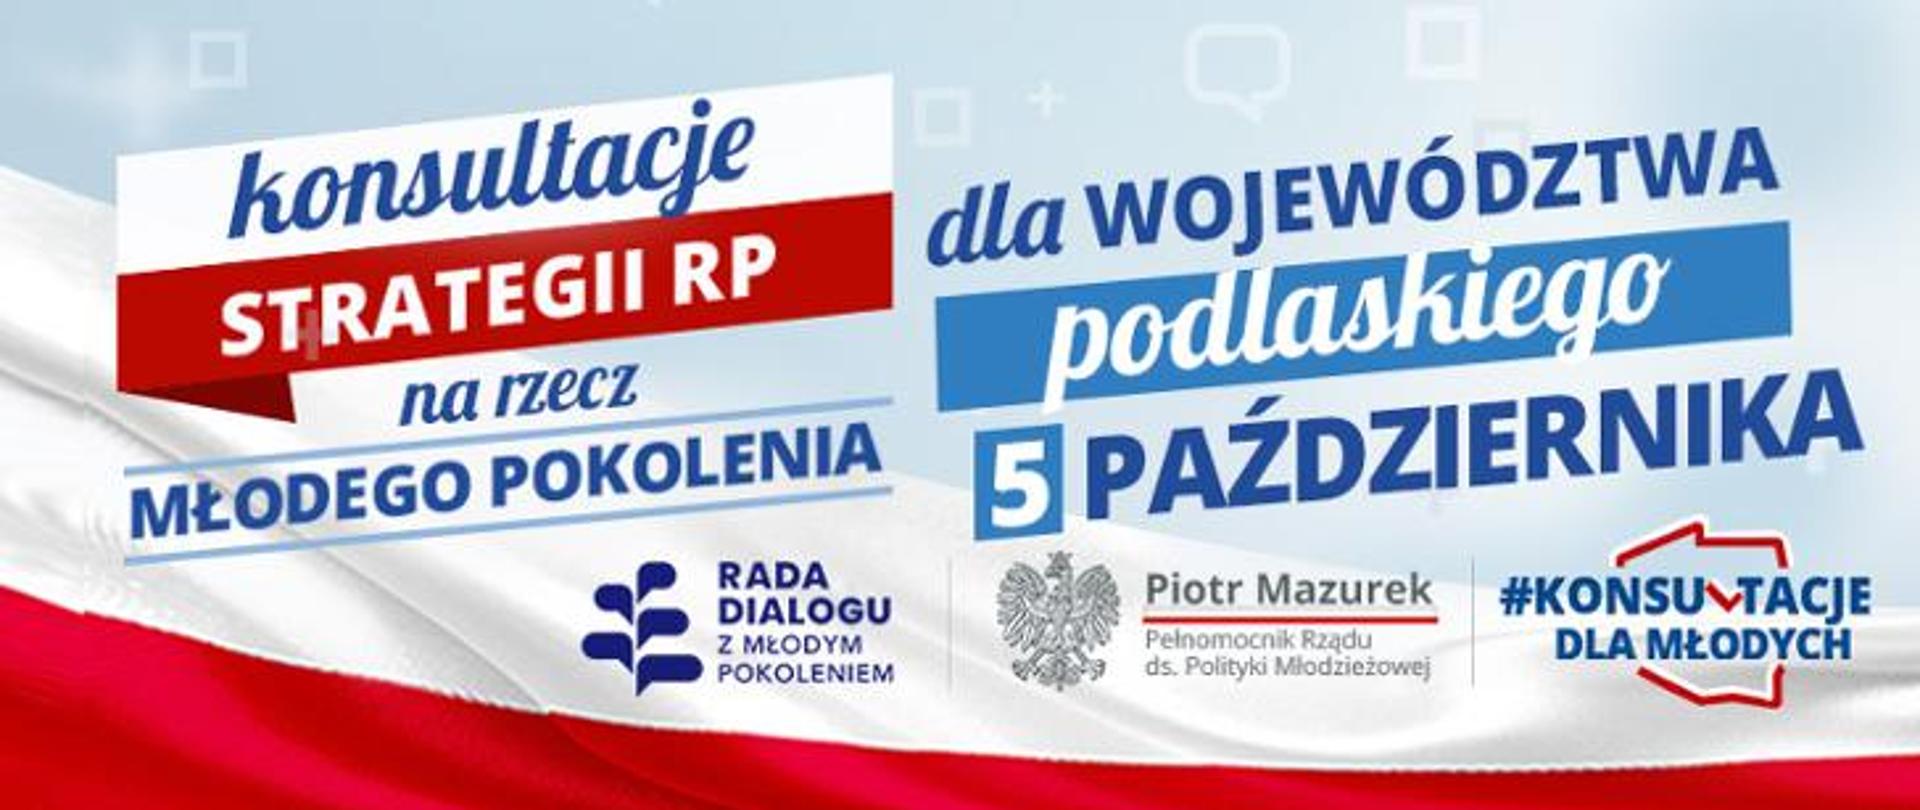 Zapisz się na konsultacje strategii dla młodych w województwie podlaskim!